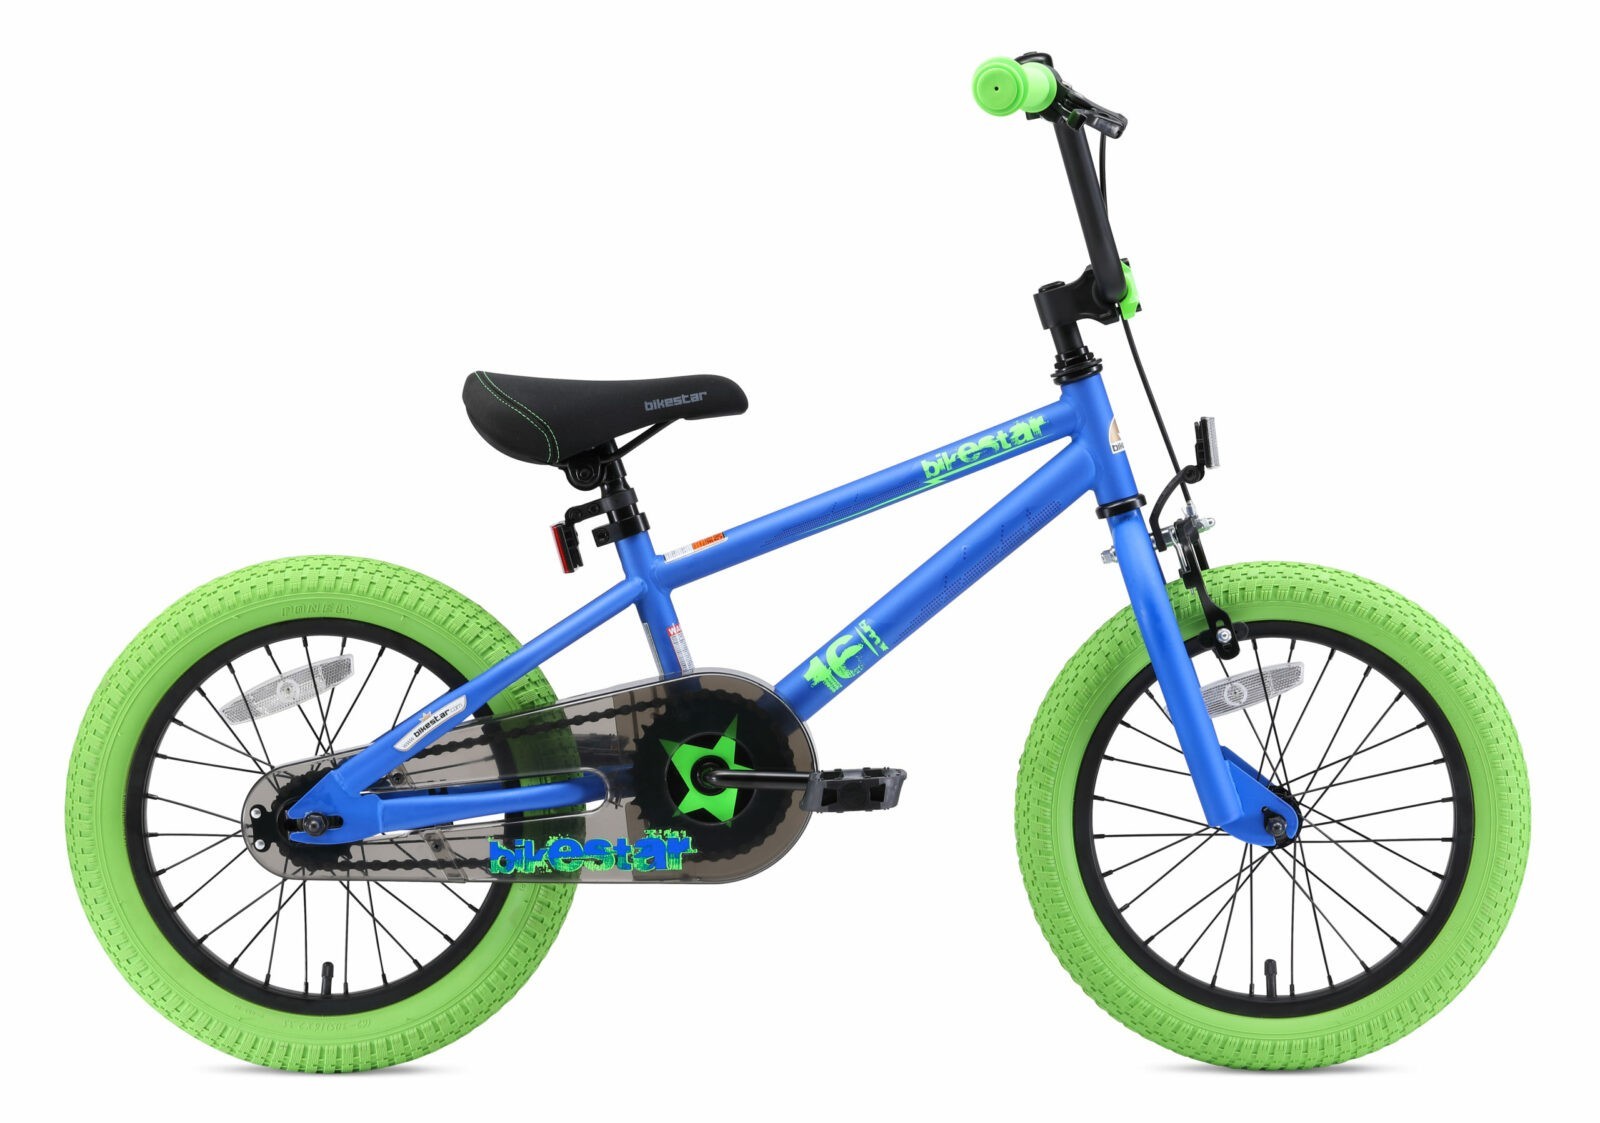 tegenkomen Aanbeveling versus Bikestar 16 inch BMX kinderfiets, blauw / groen - Fietsdirect